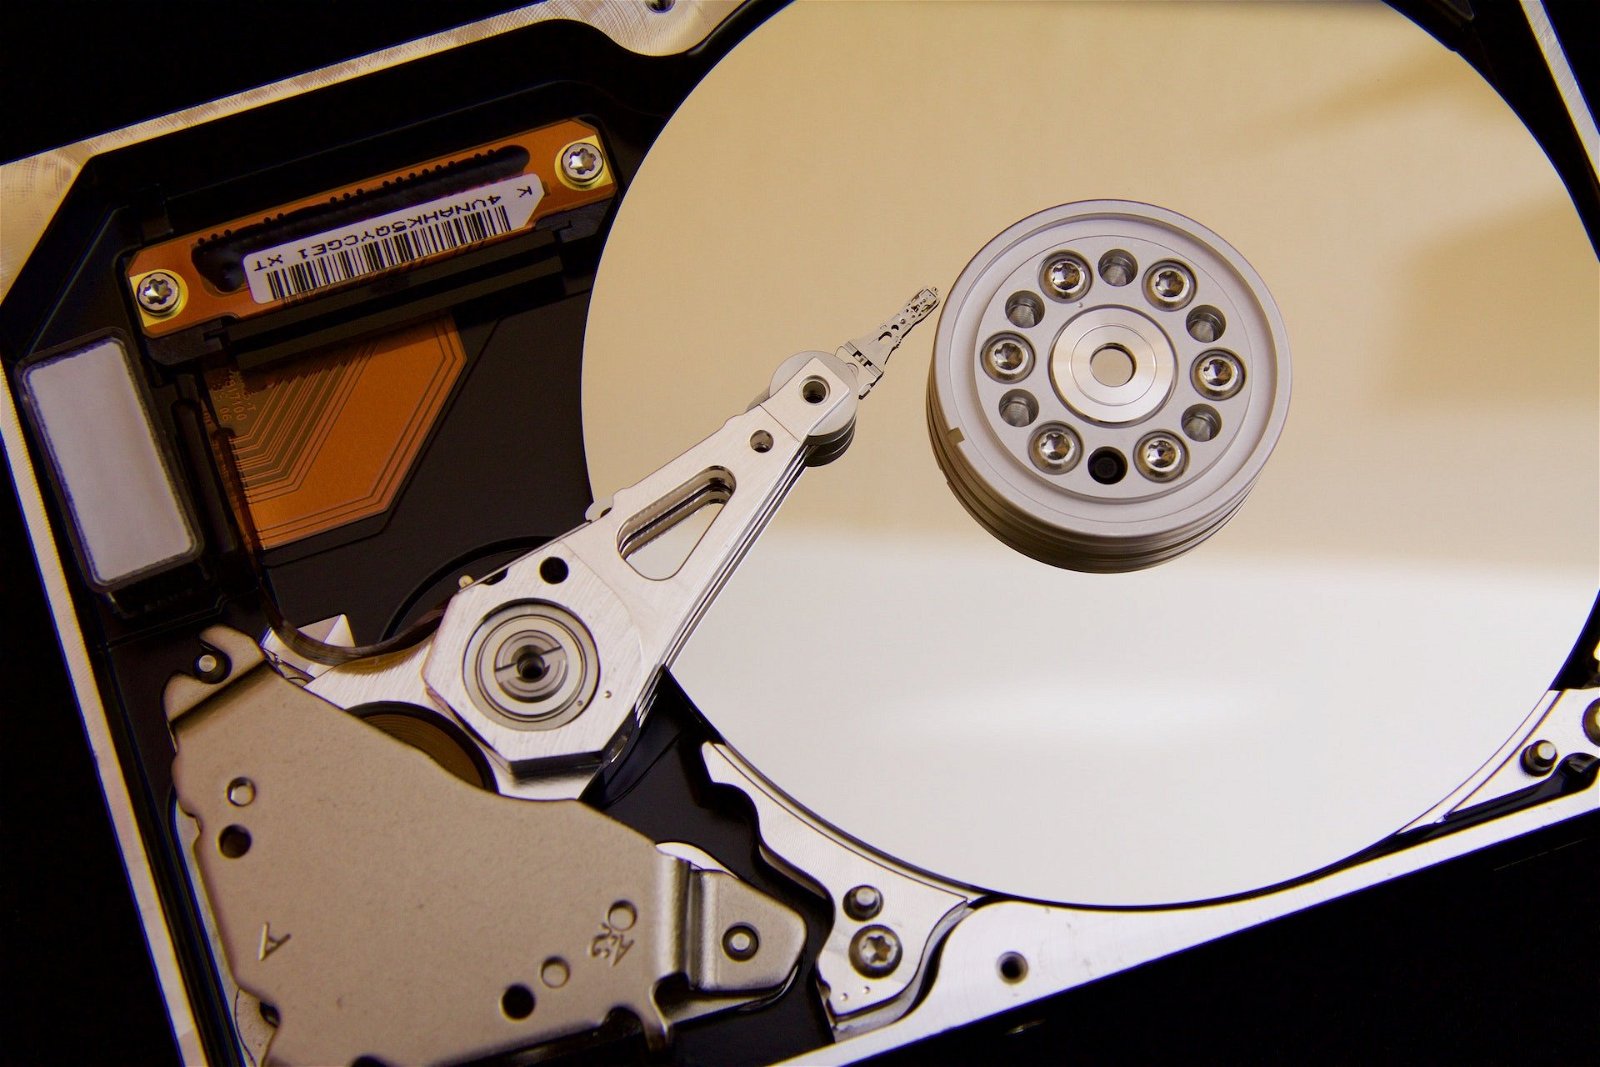 Immagine di Persino gli hard disk magnetici stanno diventando più cari per colpa delle AI, fino al 20% in più